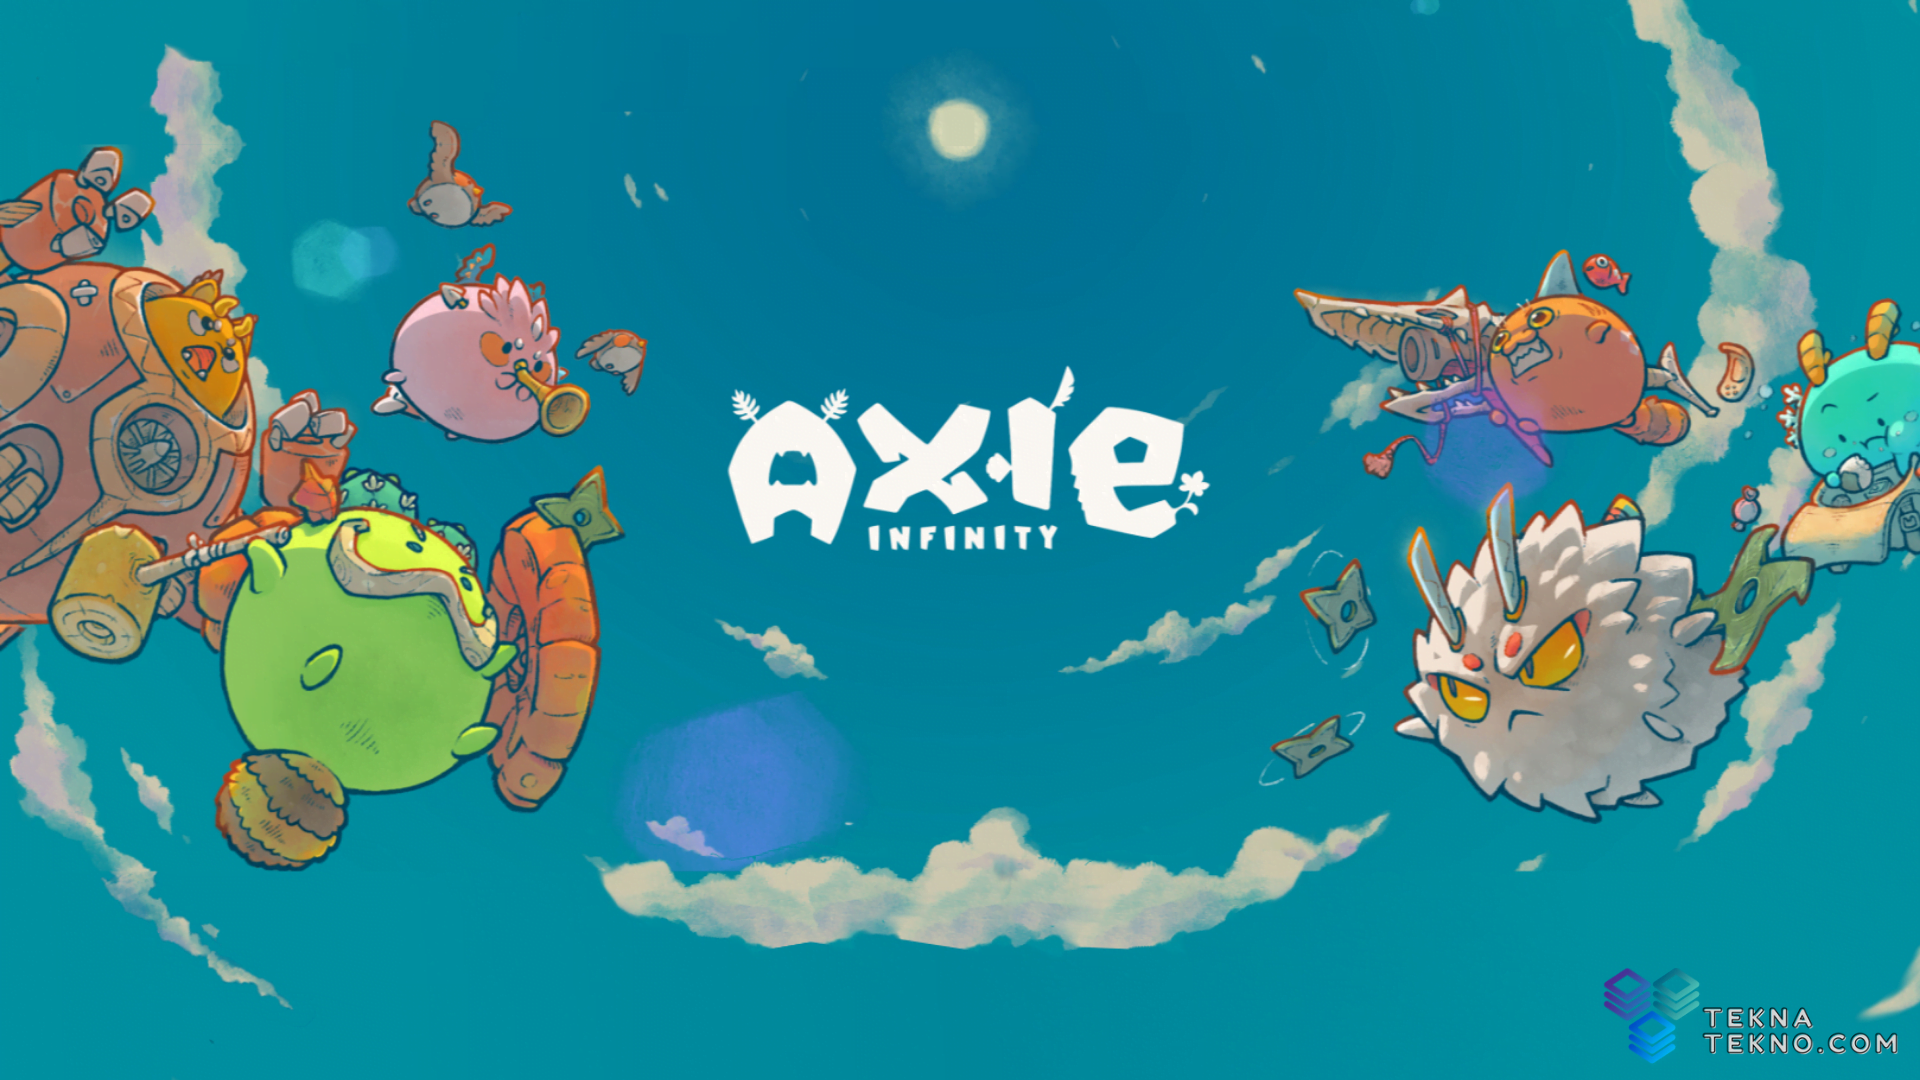 Game Axie Infinity Menemukan Pemain yang Siap di Venezuela